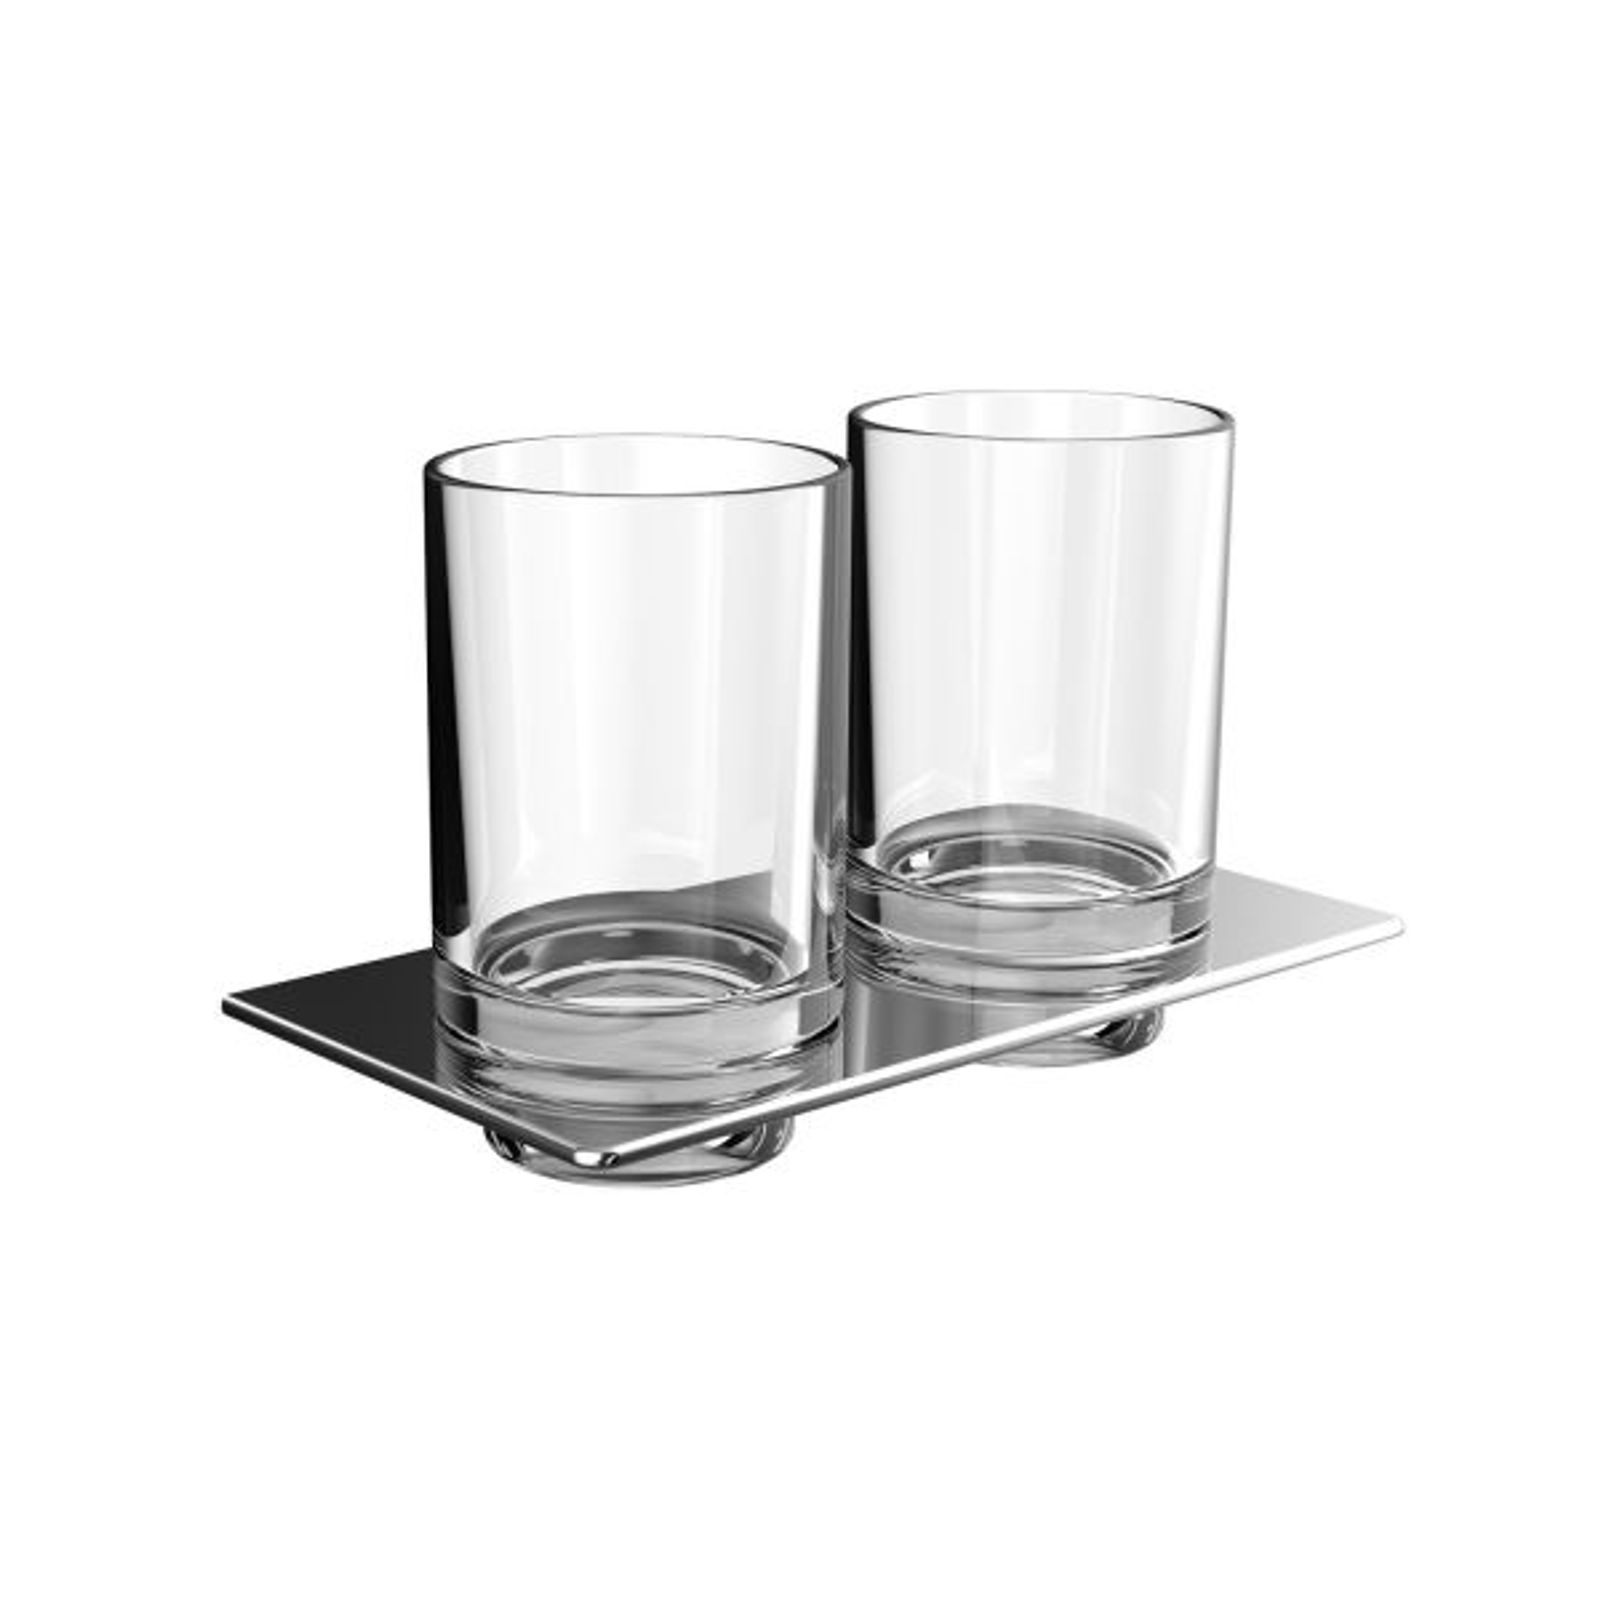 Emco Bad art Doppelglashalter Glasteil klar chrom